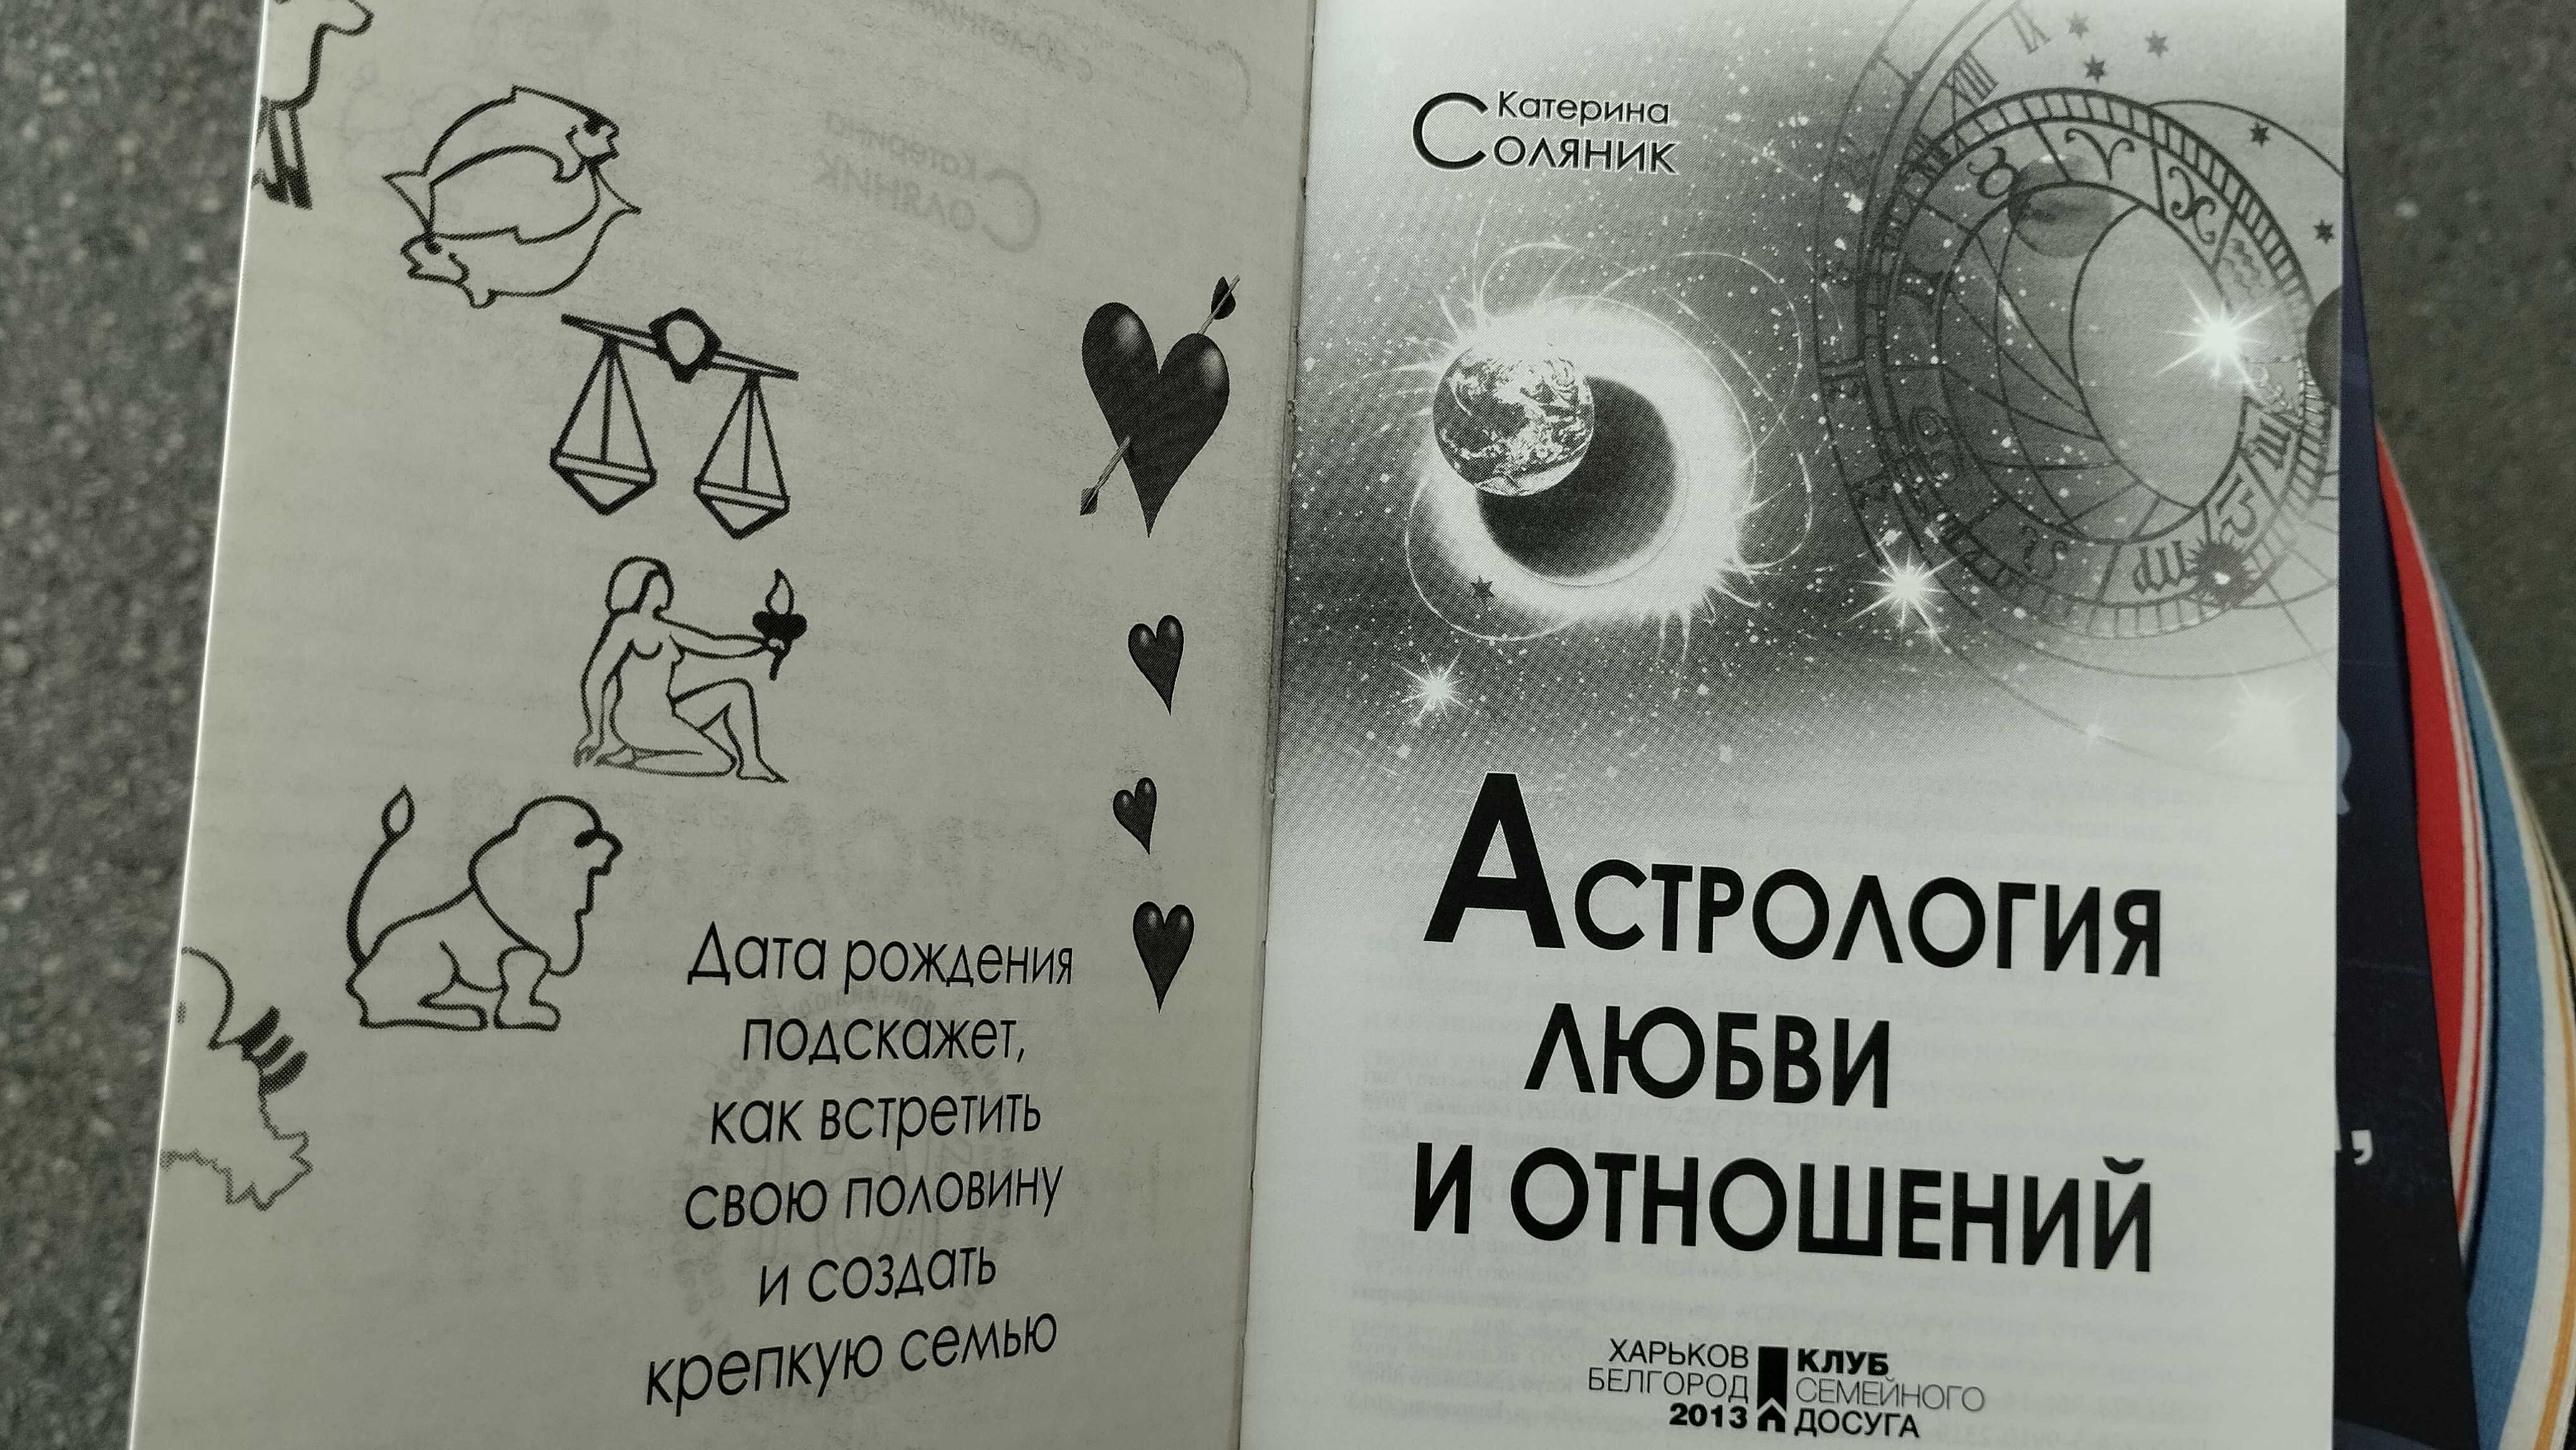 Астрология: Катерина Соляник "Астрология любви и отношений"